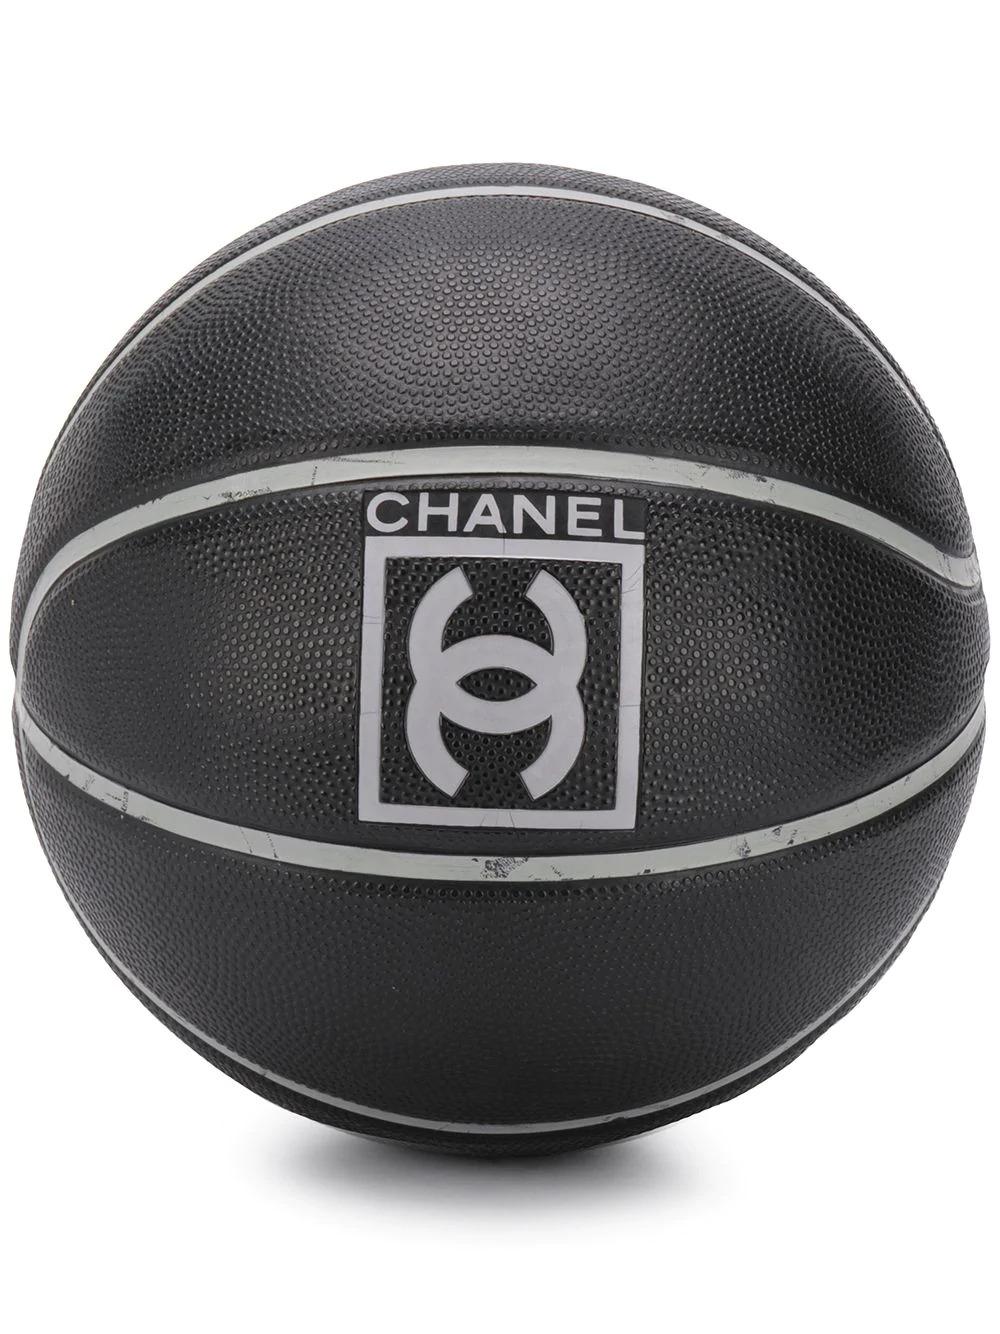 Dieser einzigartige Basketball, den Kylie Jenner trug, wurde 2004 aus anthrazitfarbenem synthetischem Gummi hergestellt. Dieser Ball von Chanel in limitierter Auflage ist ein Muss für jeden Sammler. Er zeigt das ikonische, ineinandergreifende